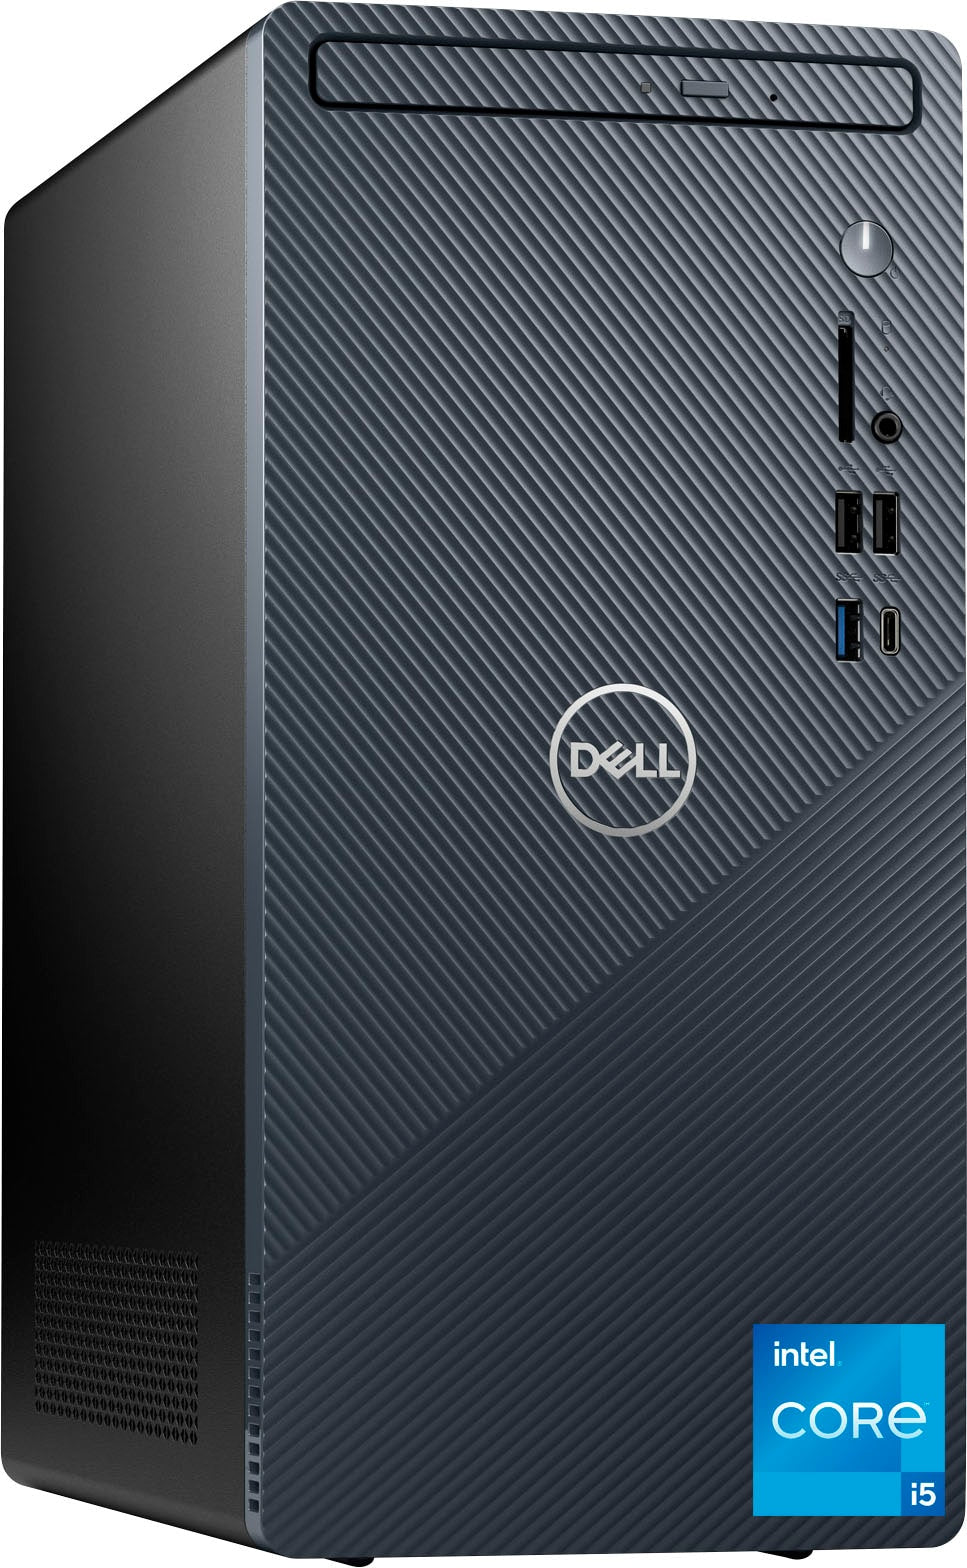 Dell - Inspiron Compact Desktop - Intel Core i5-12400 - 12GB Memory - 256GB SSD - Mist Blue_1